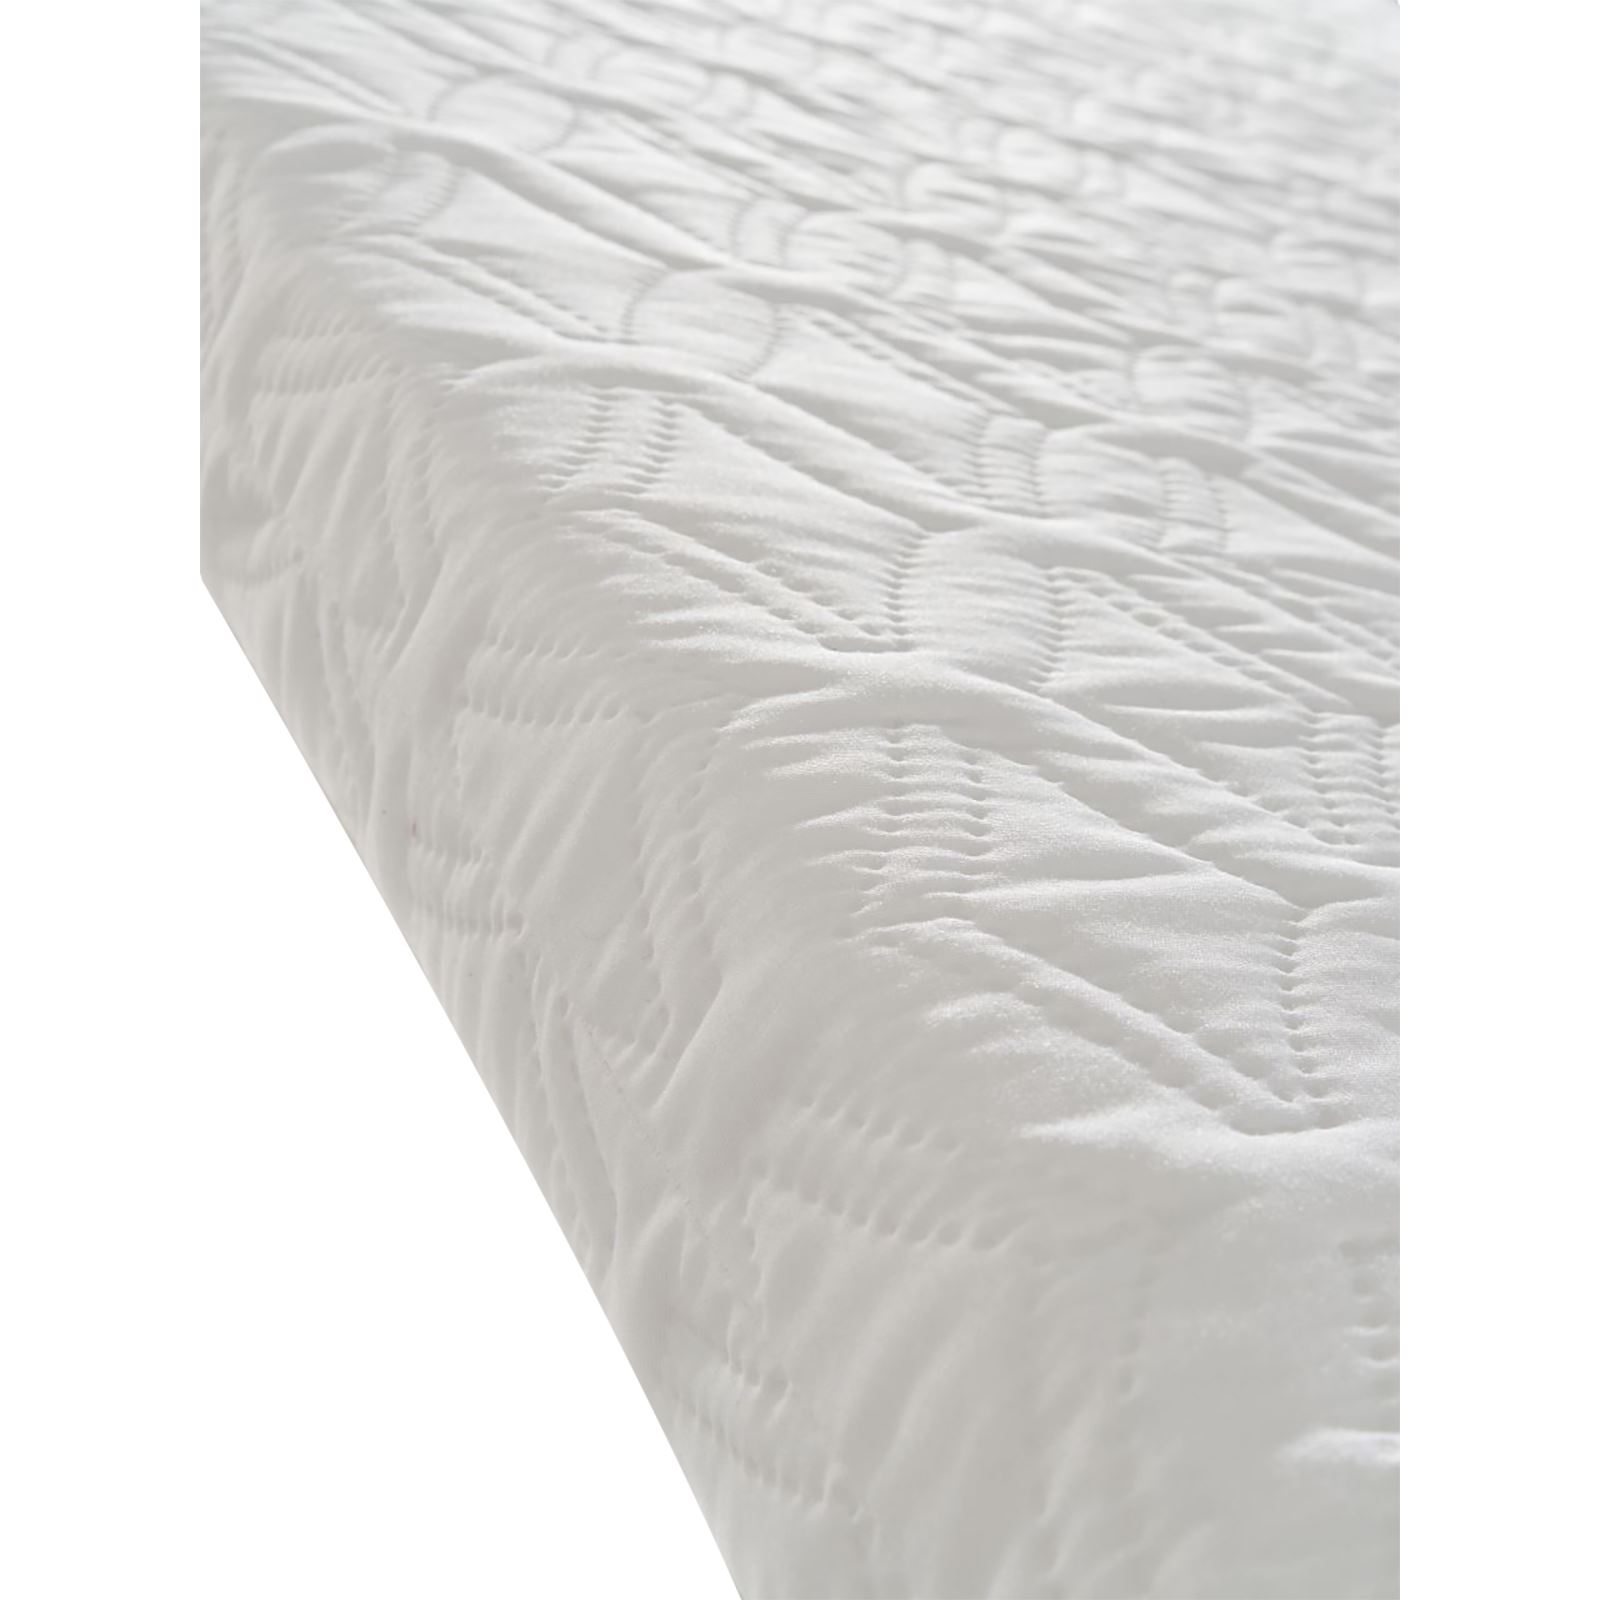 Keremce Lüks Sünger Oyun Parkı Yatağı 60x120 Yatak Beyaz